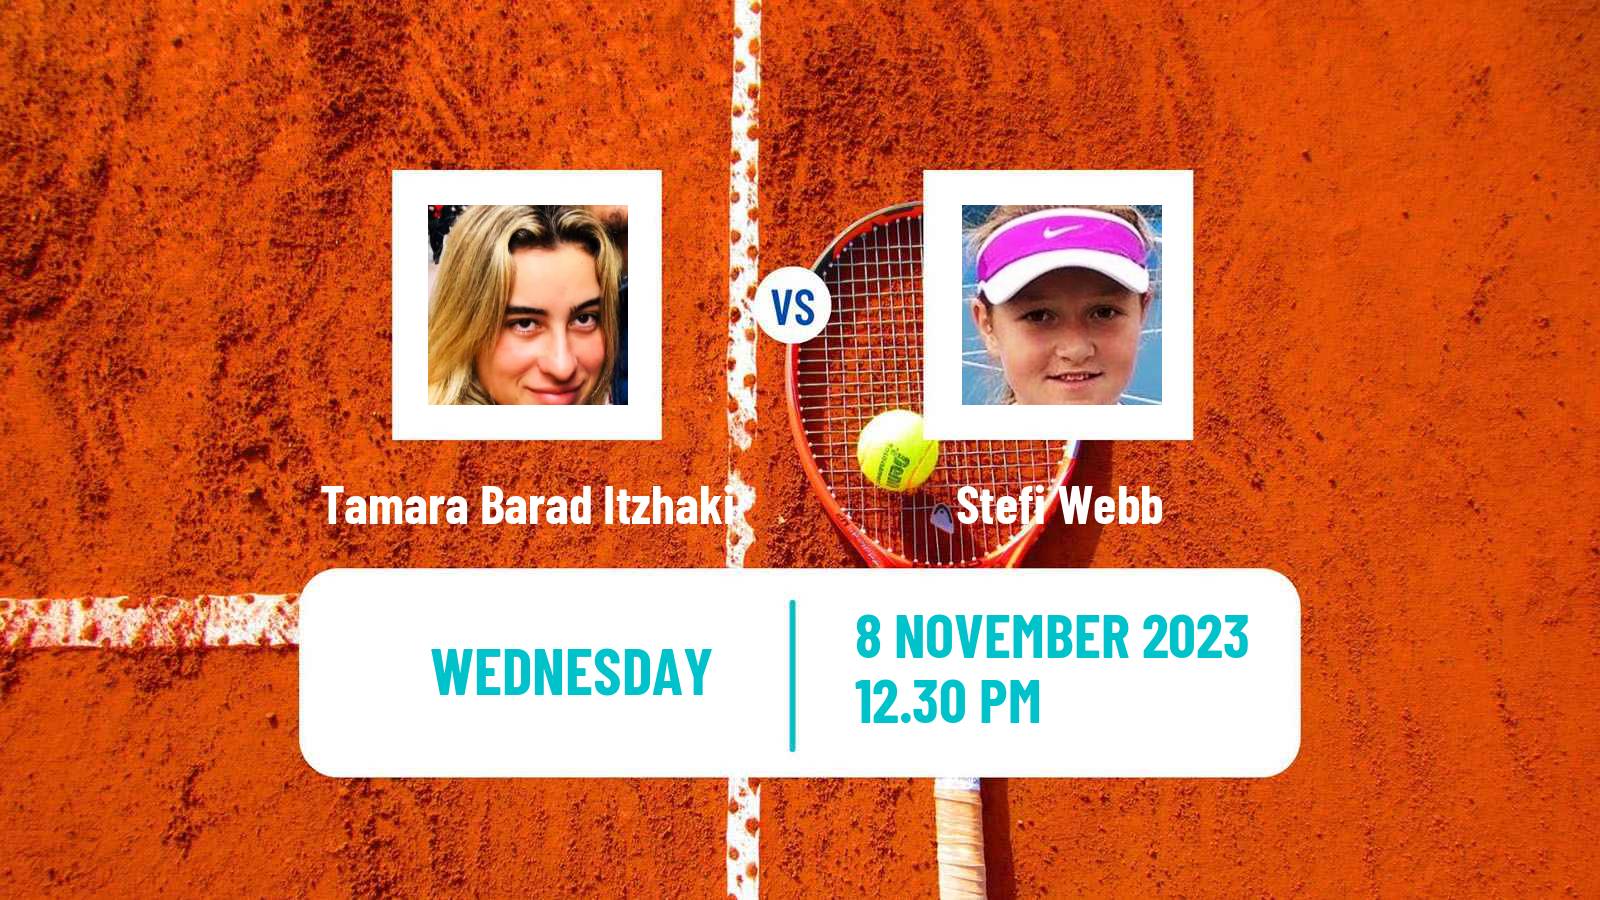 Tennis ITF W15 Champaign Il Women Tamara Barad Itzhaki - Stefi Webb